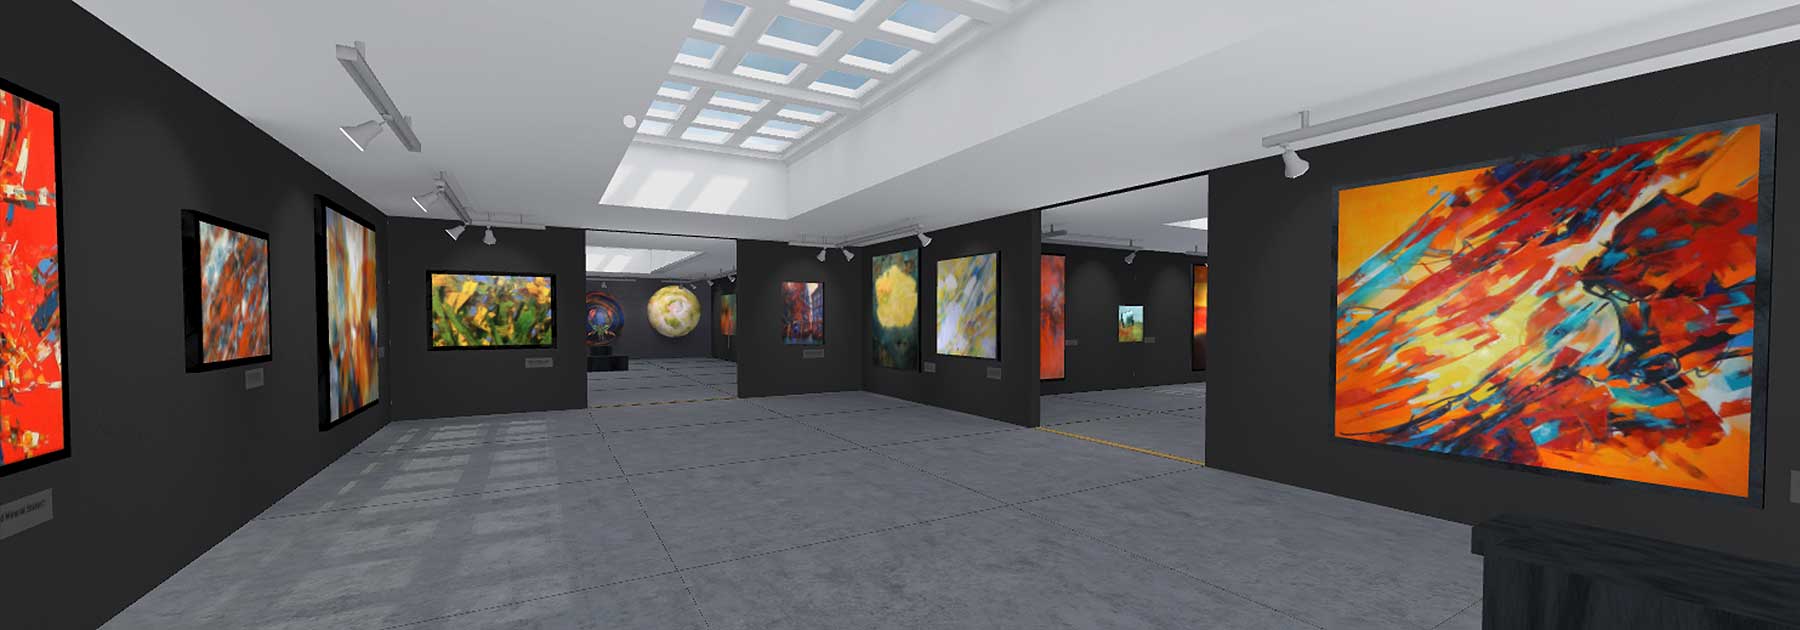 Peinture à l'huile sur le Web en VR, Galerie art en réalité virtuelle, Expo VR, VR, exposition par jc Tanguy, nantes - France